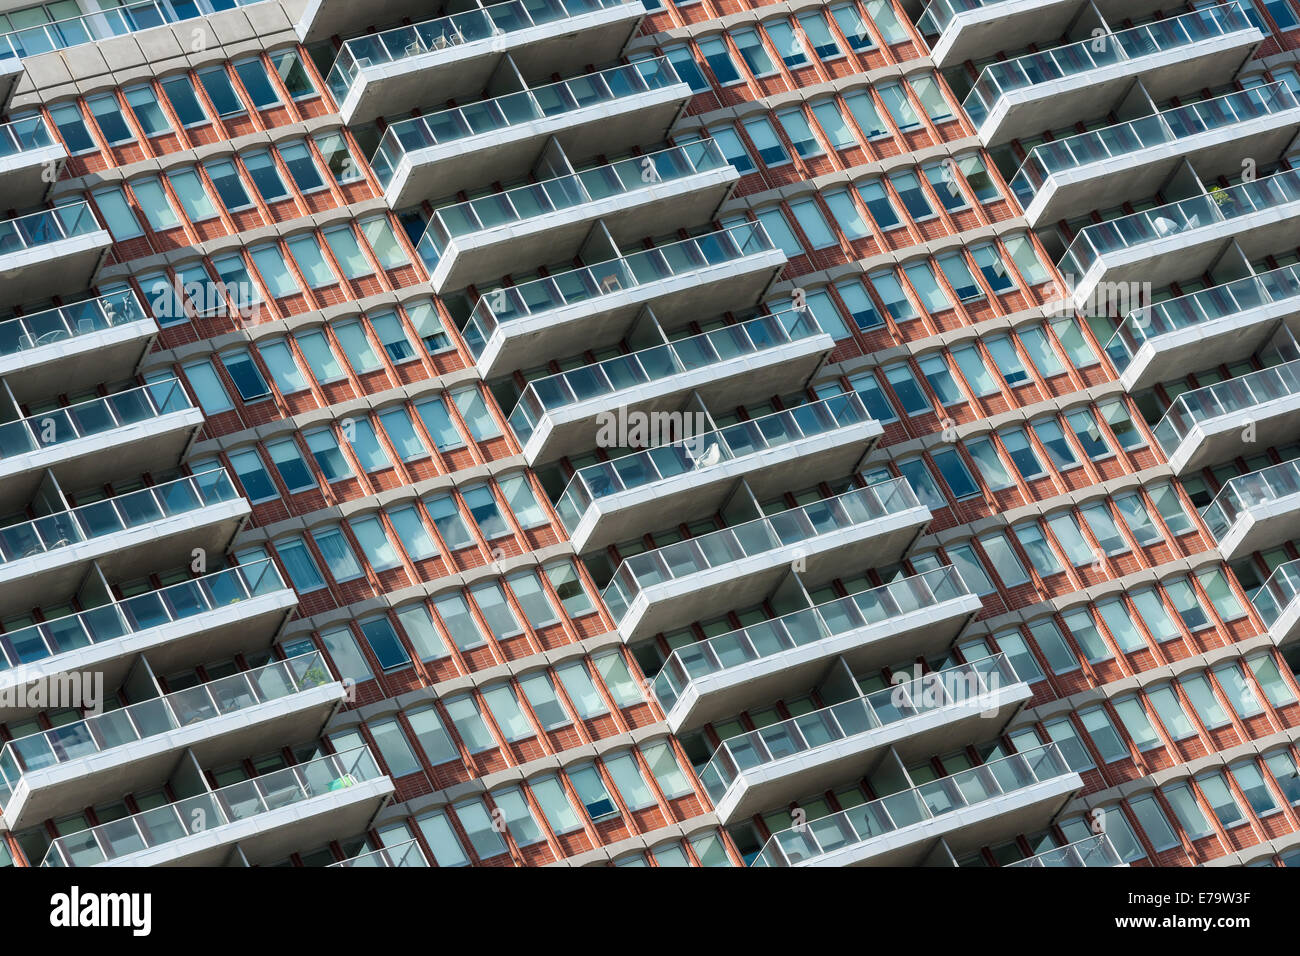 Modernen Stadt Wohnraum - einem Hochhaus in einer modernen amerikanischen Stadt bietet Lebensraum für Hunderte von Menschen. Stockfoto